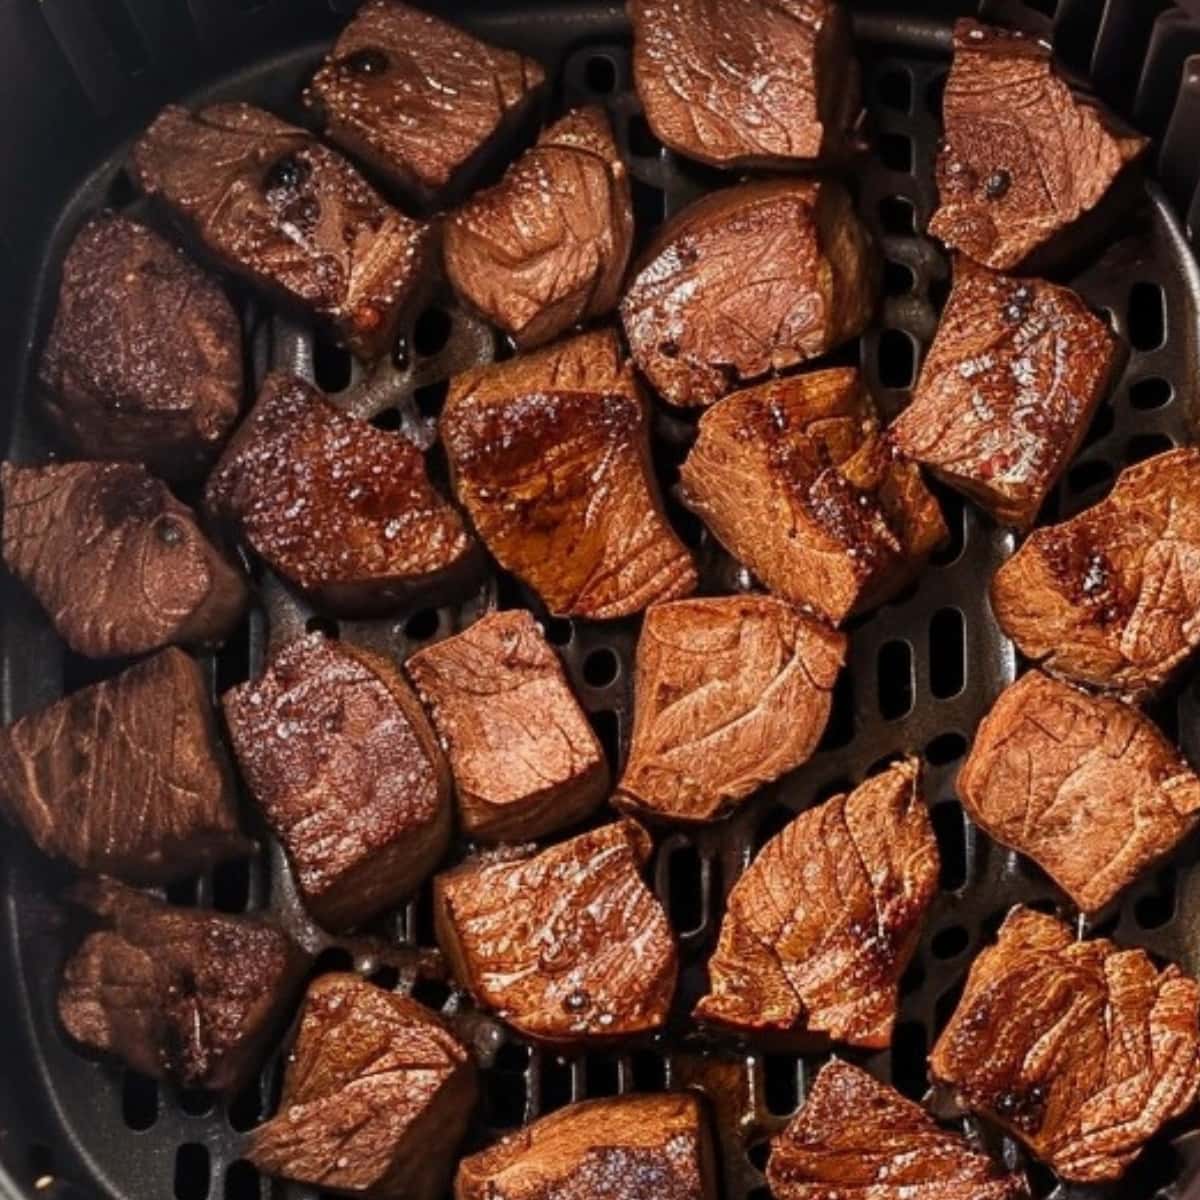 Steak bites in an air fryer.